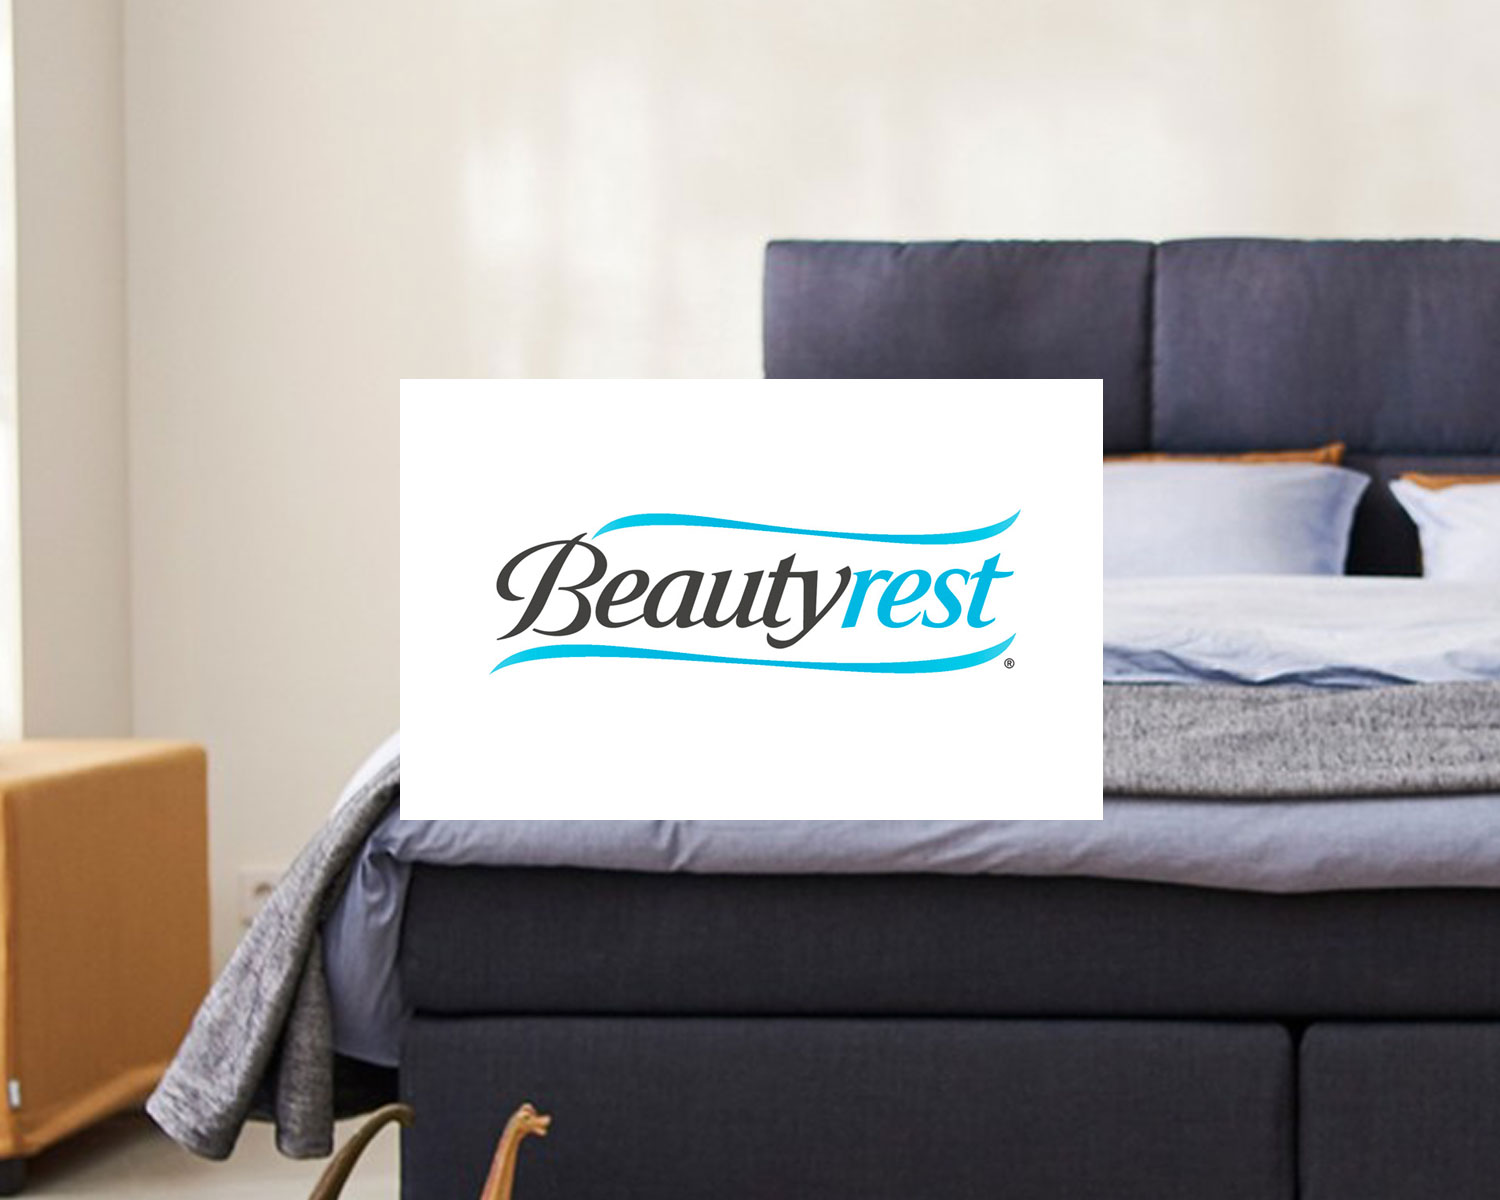 Beautyrest matras kopen online